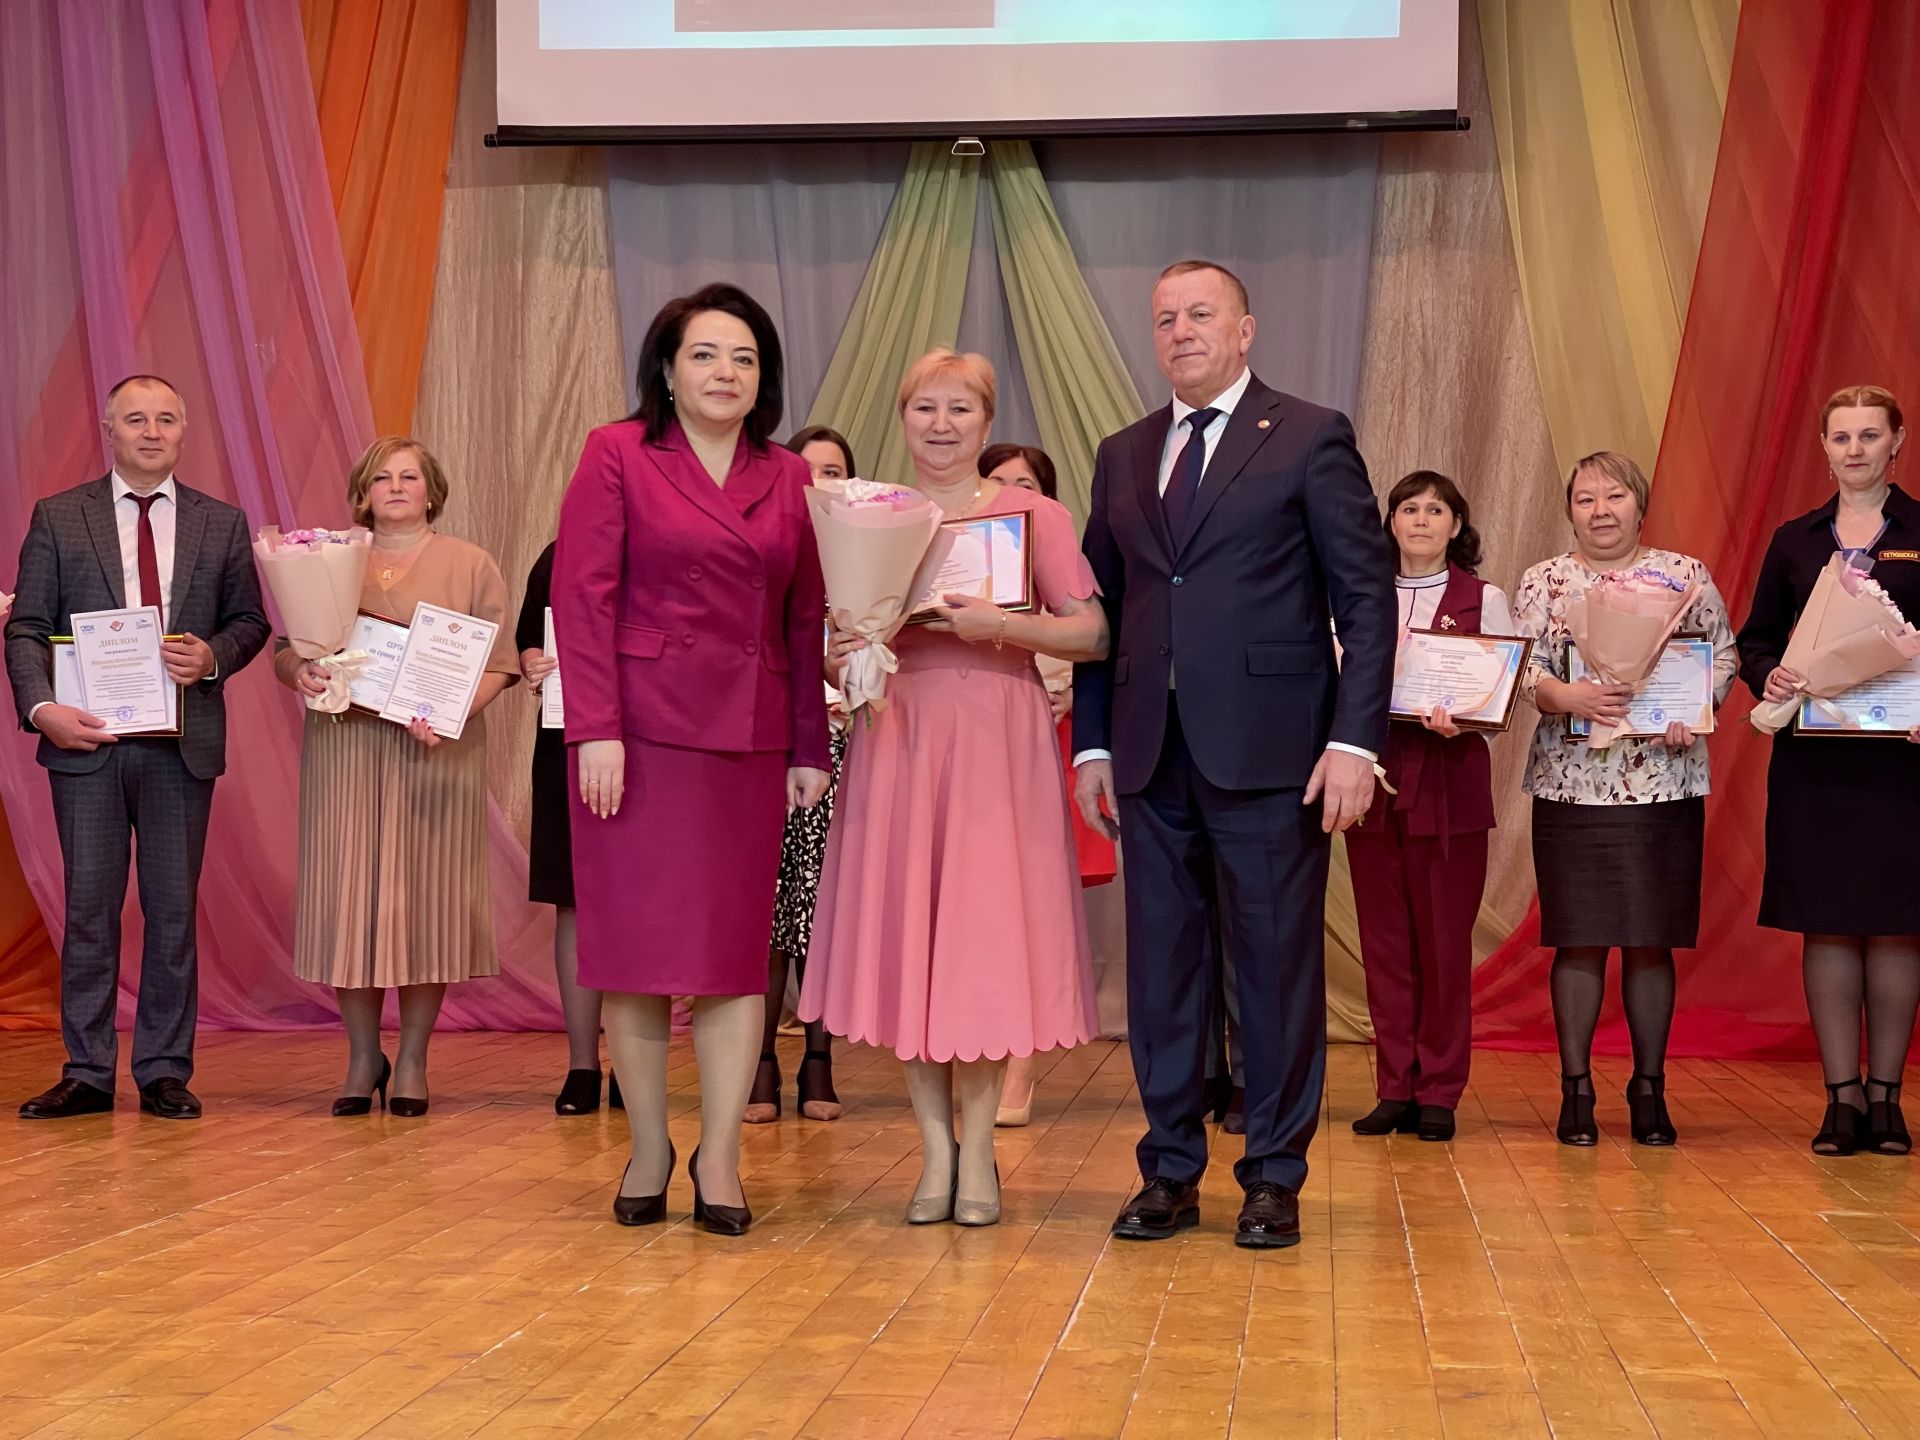 В Тетюшах чувствовали педагогов победителей конкурсов профмастерства